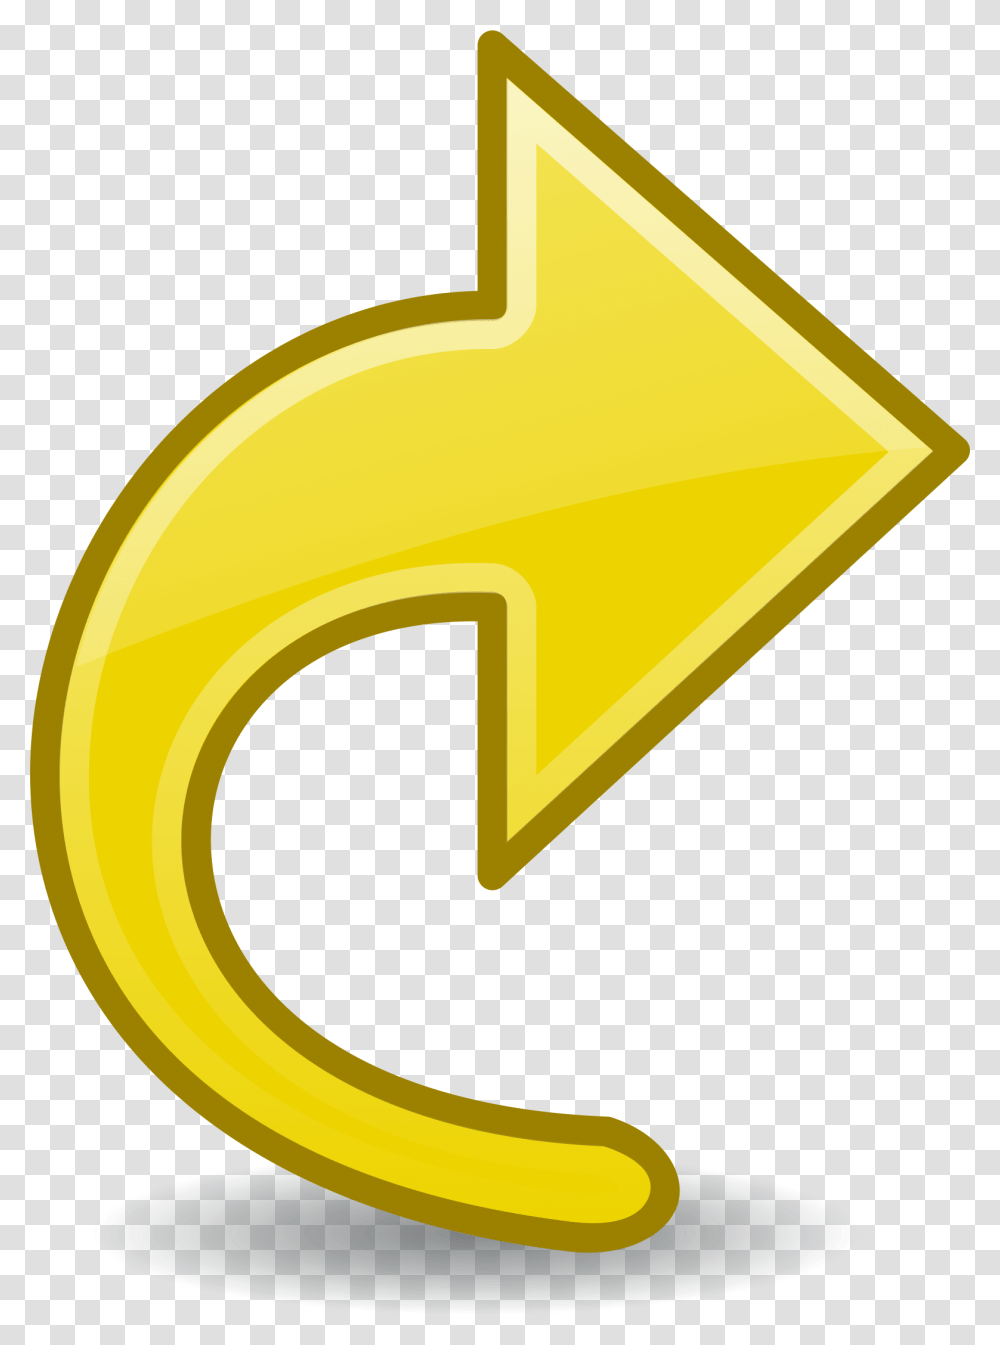 Computer Icons Arrow Symbol Diagram Yellow Simbol Arrow Yellow, Logo Transparent Png